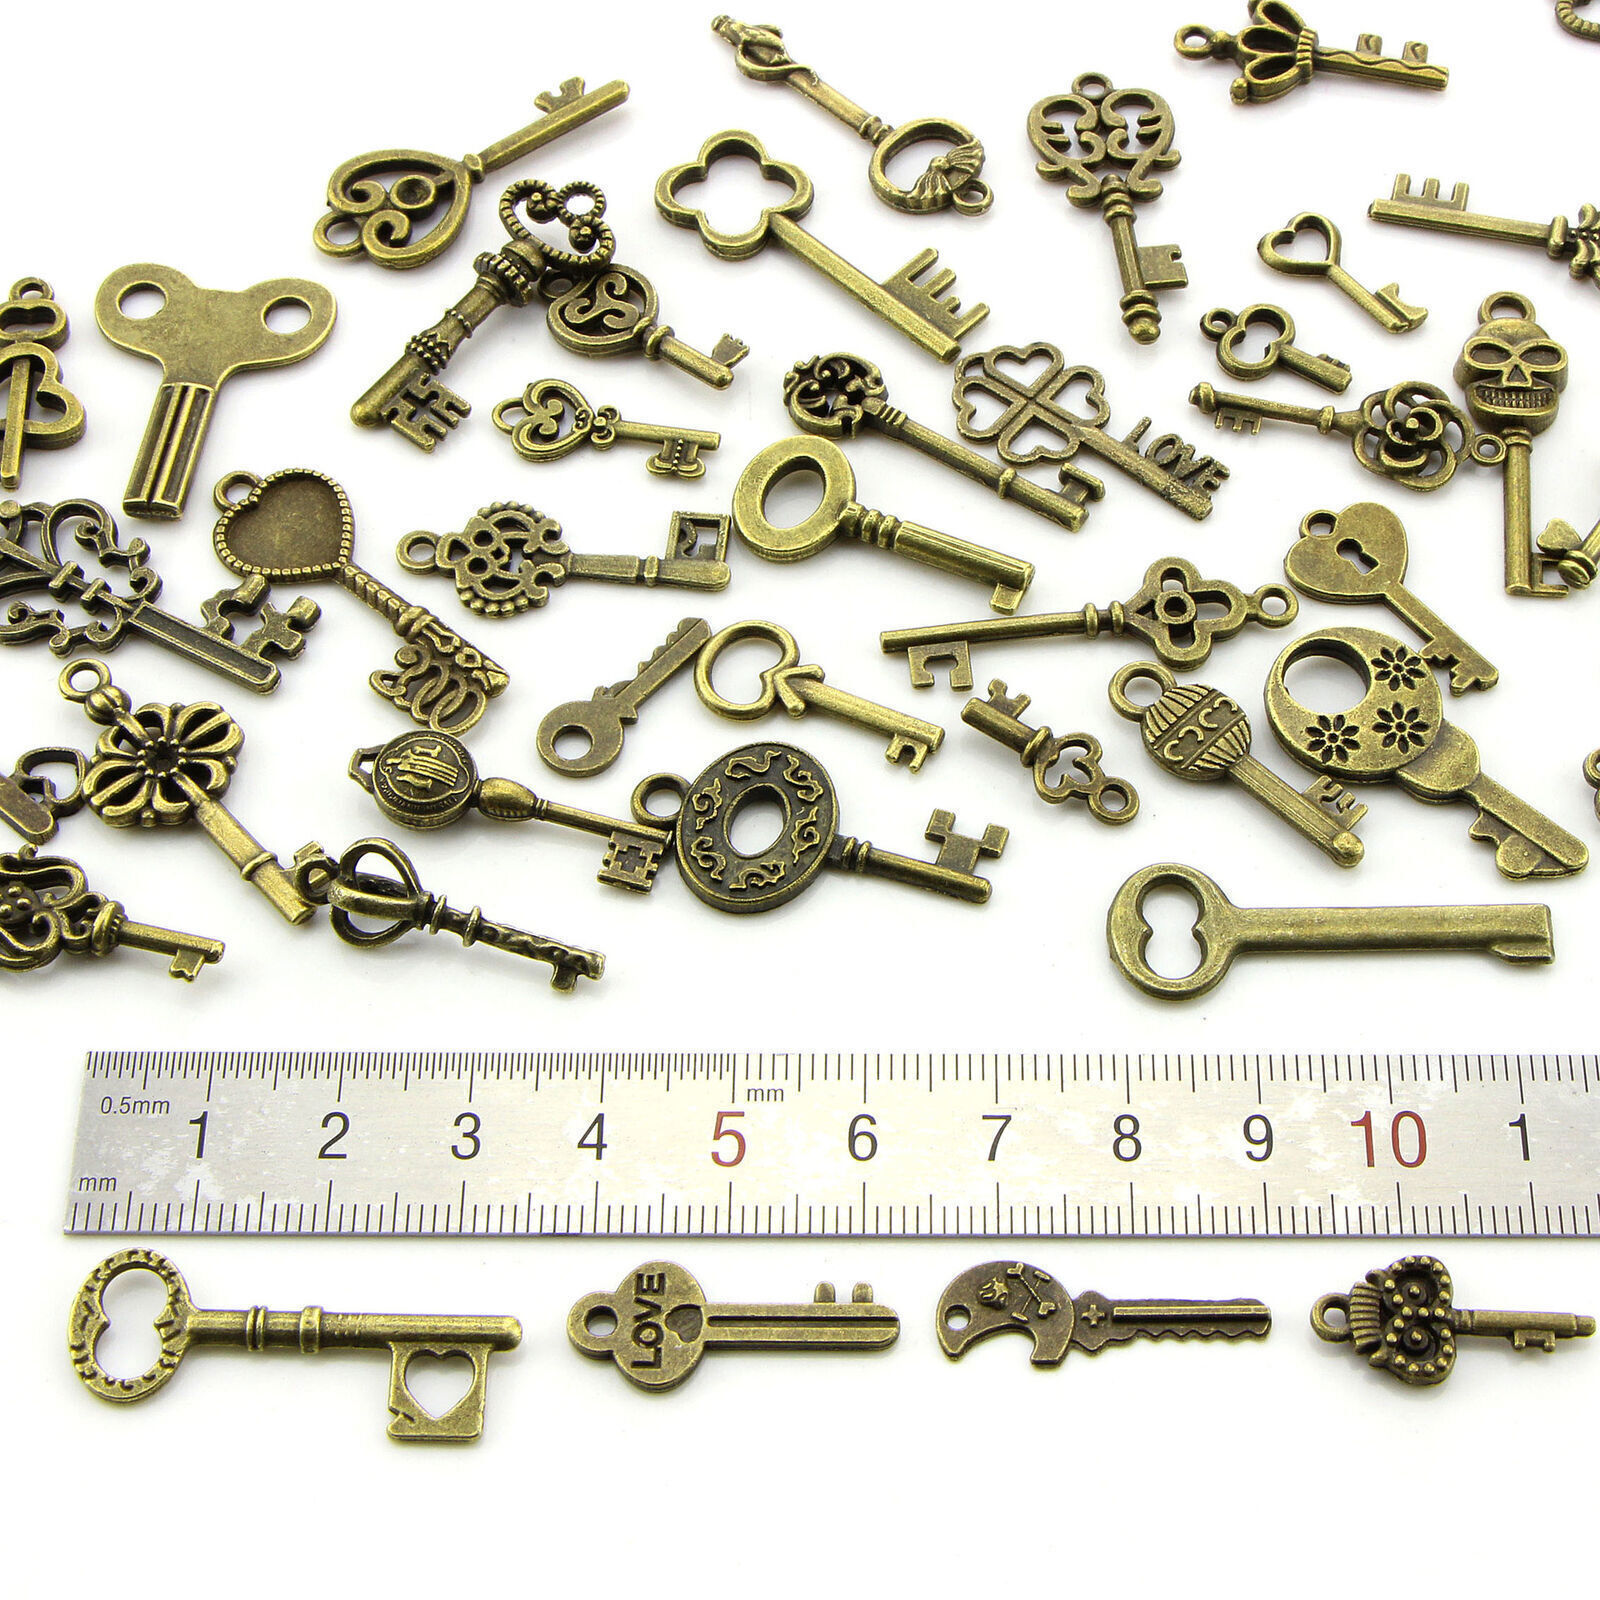 50 PCS/Set Vintage Antique Old Brass Skeleton Keys Lot Retro Cabinet Barrel Lock